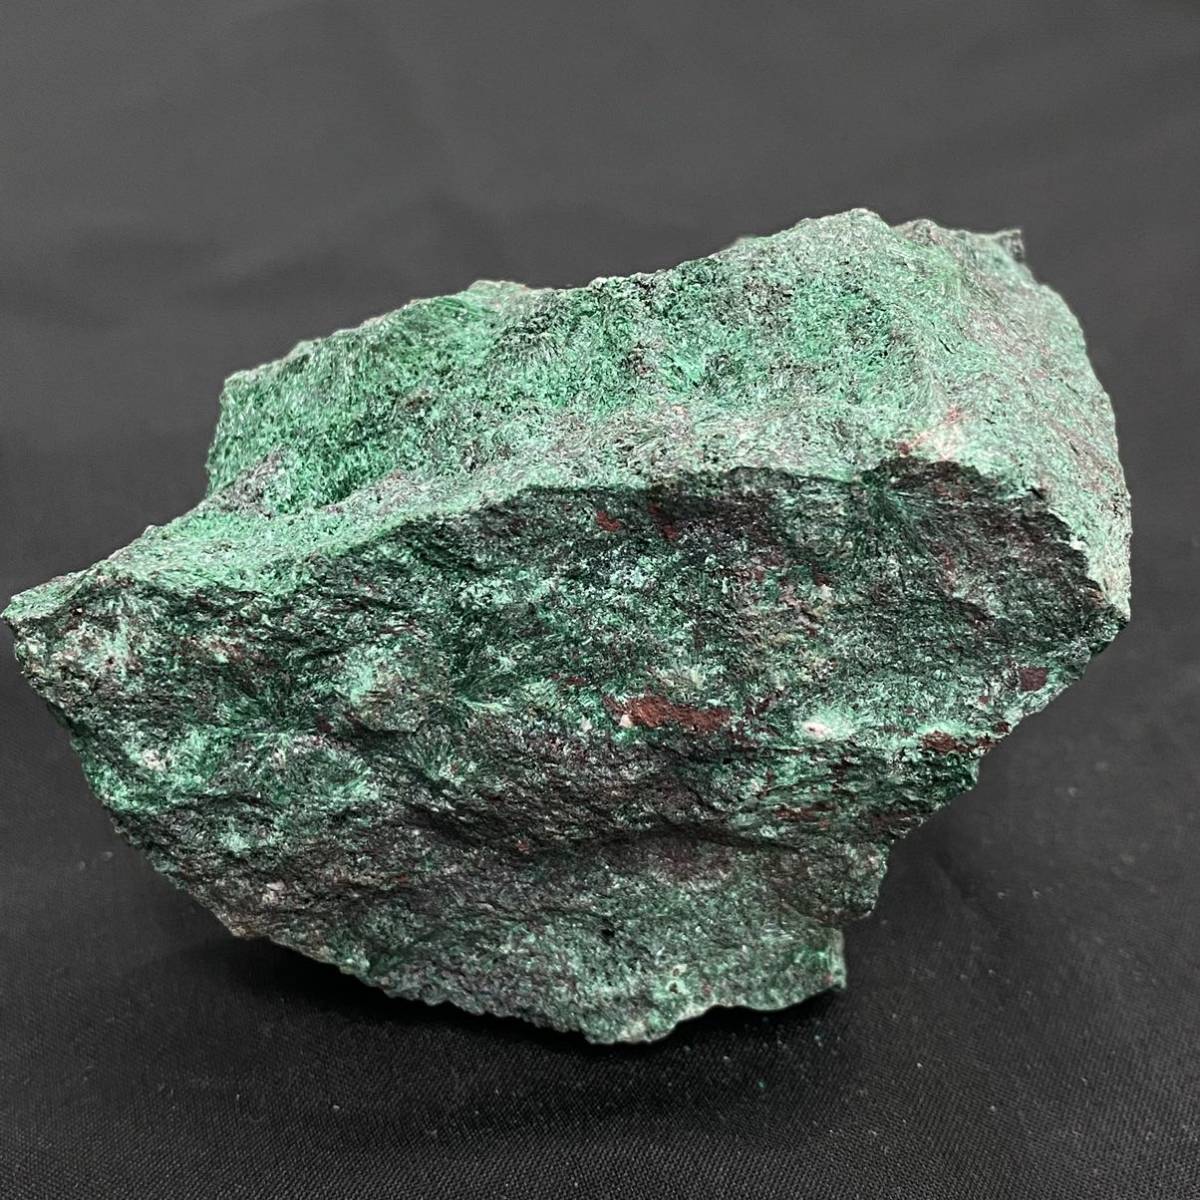 858 鉱石 原石 天然石 MALACHITE 孔雀石 マラカイト 253g CuCO3・Cu(OH)2 アリゾナ州 U.S.A. 鉱物_画像7